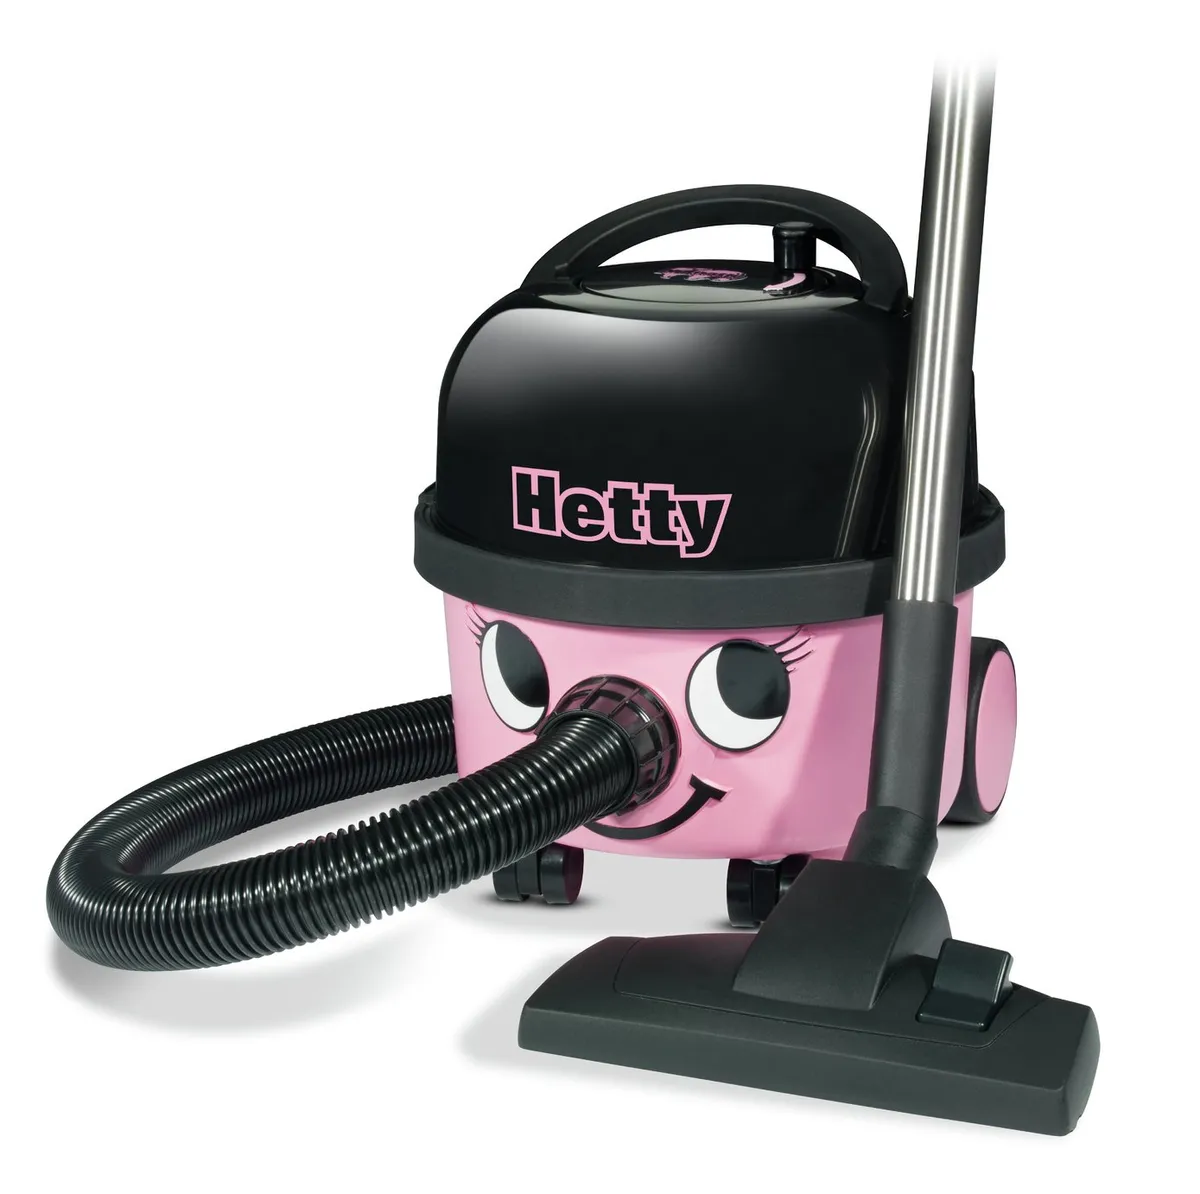 Henry HET160 vacuum